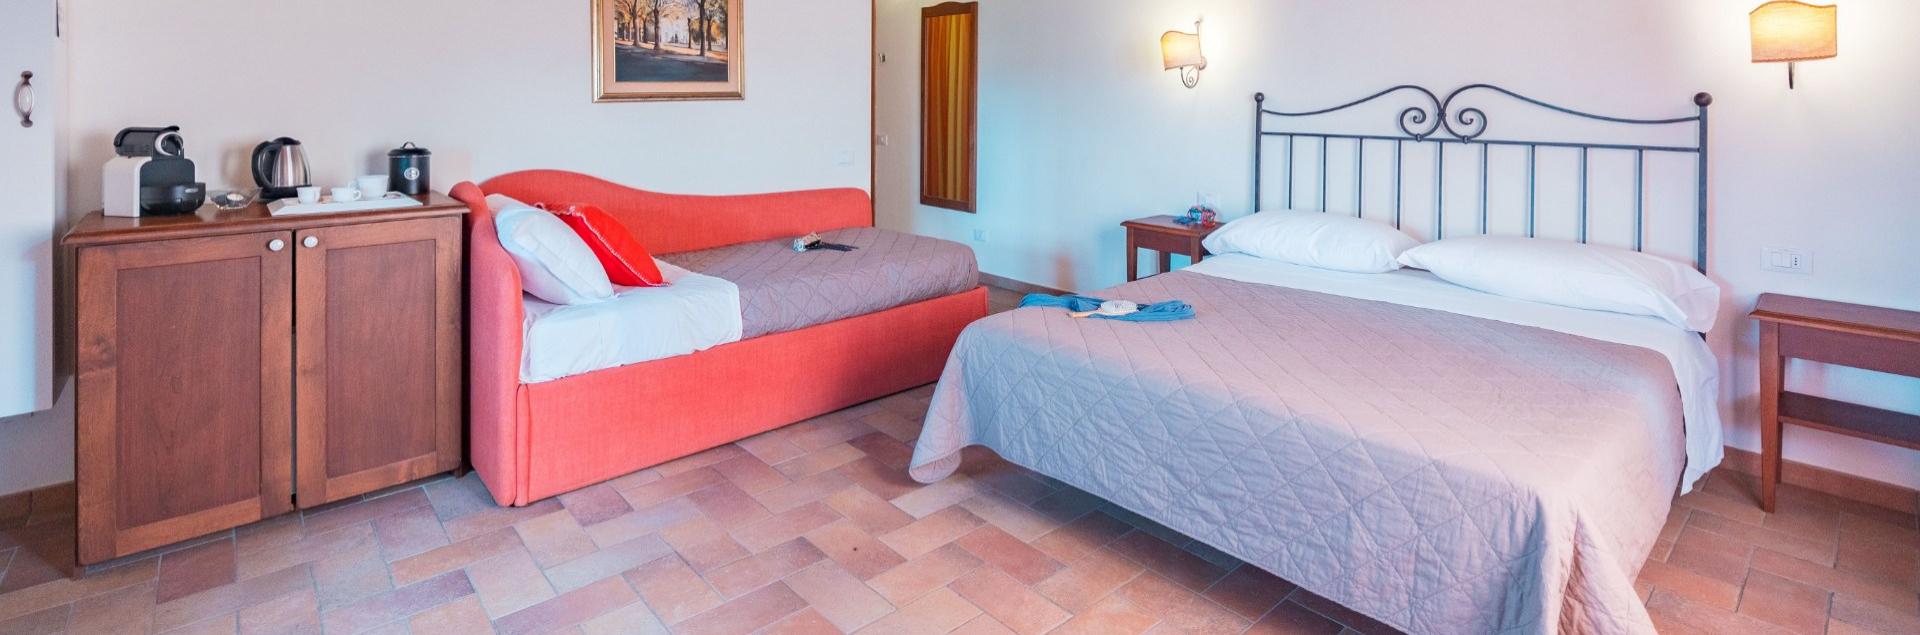 campinglecapanne en seaside-apartments-tuscany 022